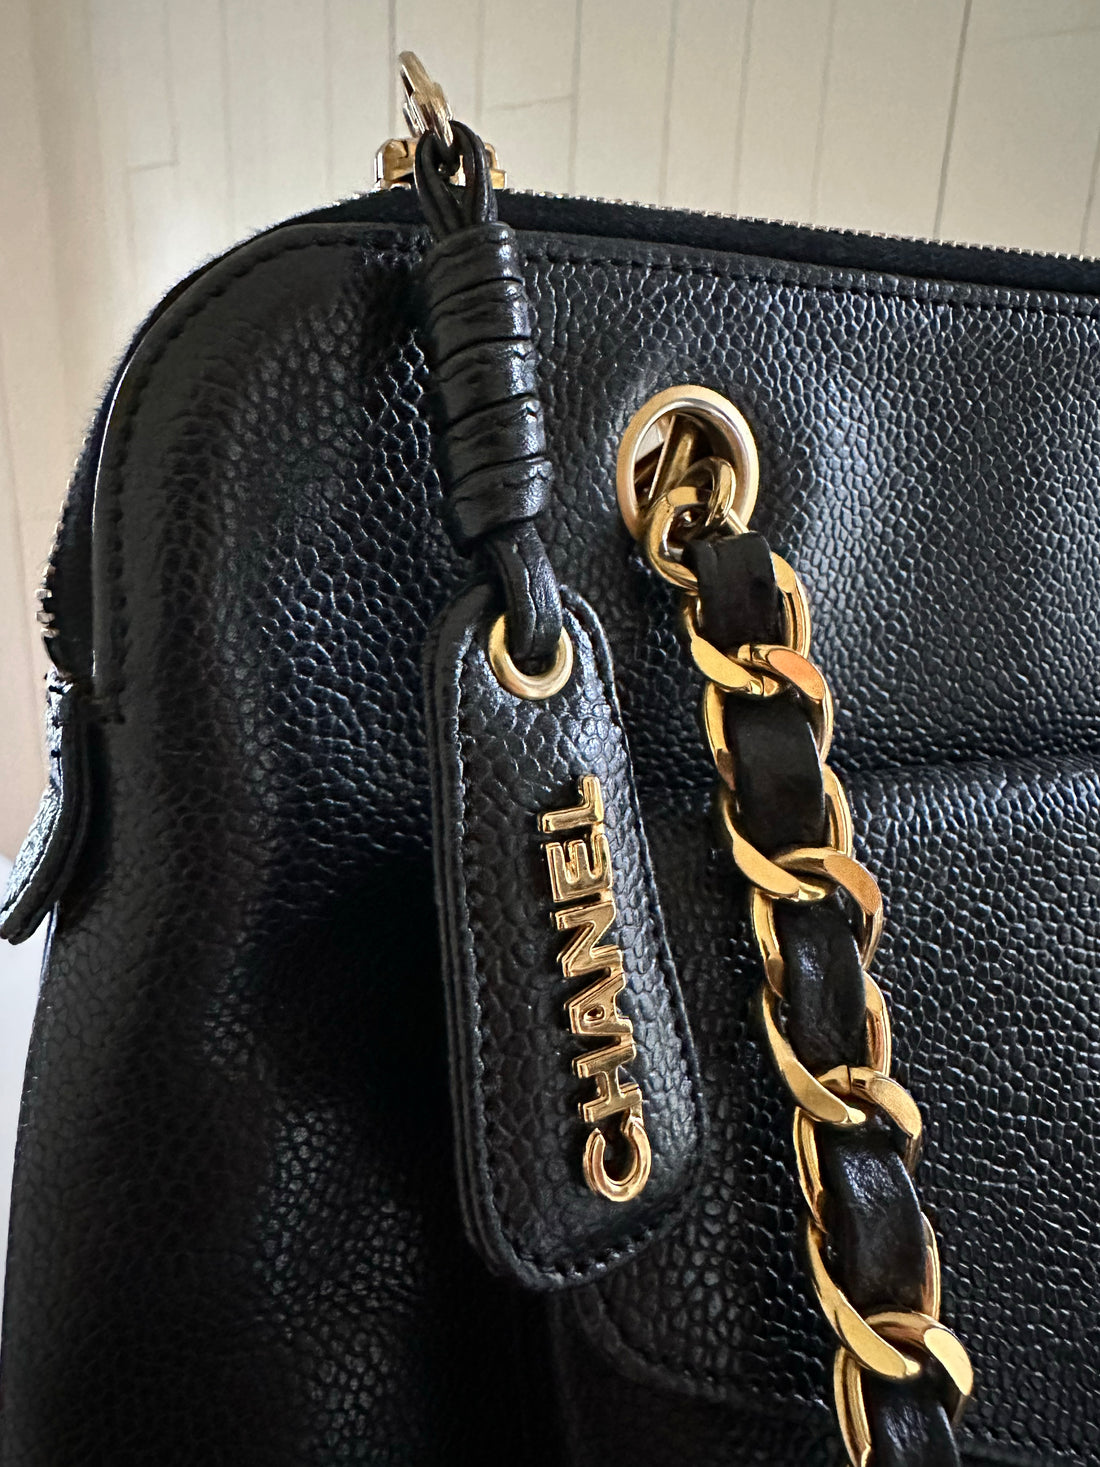 chanel logo on purse